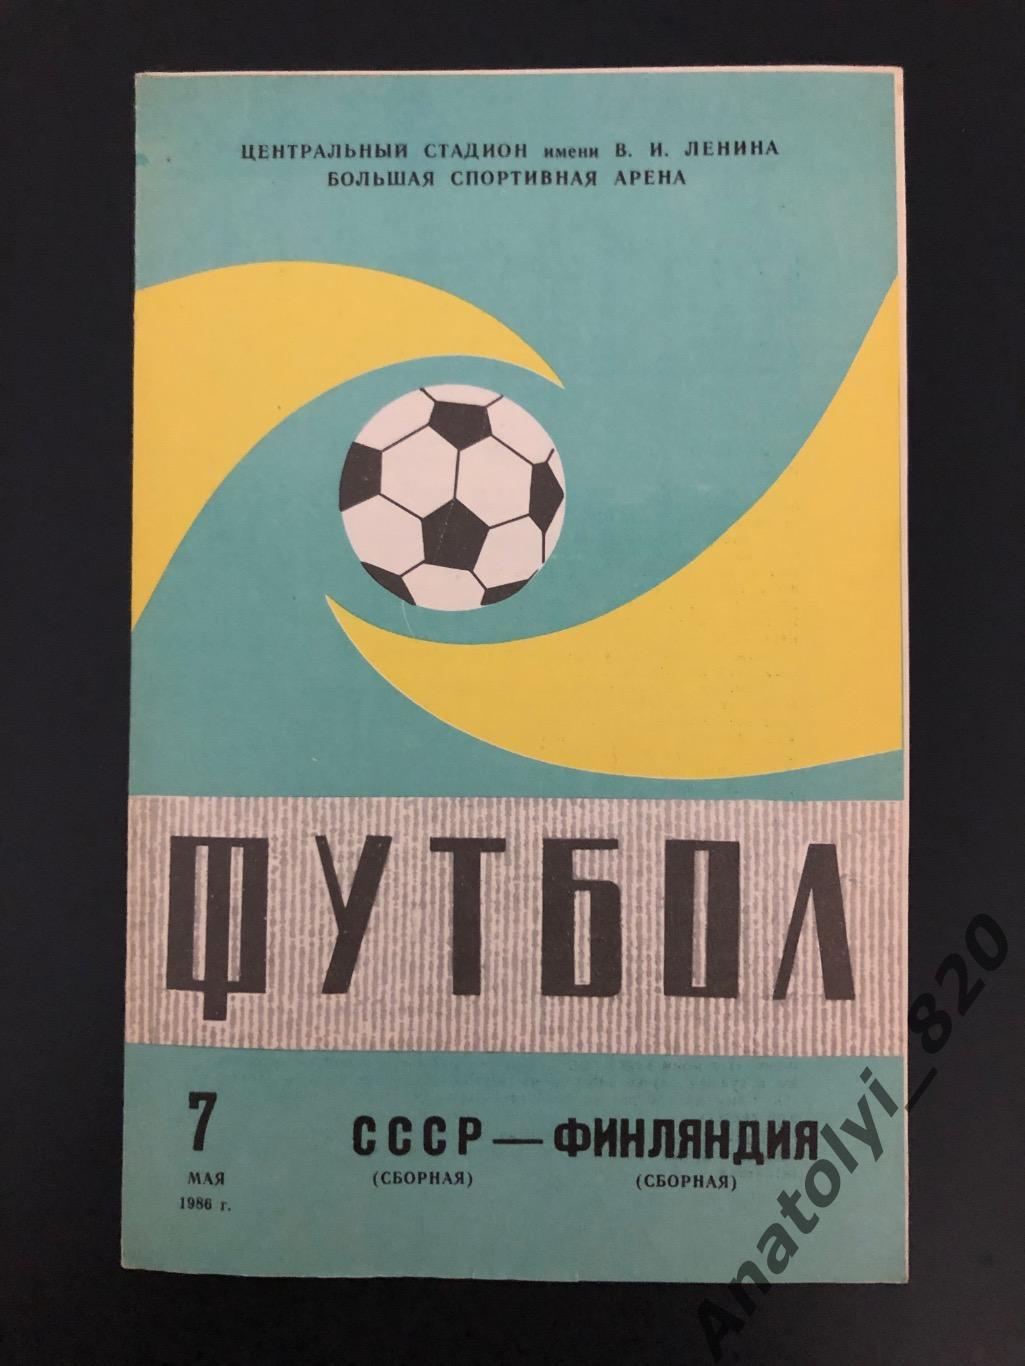 Сборная СССР - сборная Финляндии, 07.05.1986 г.